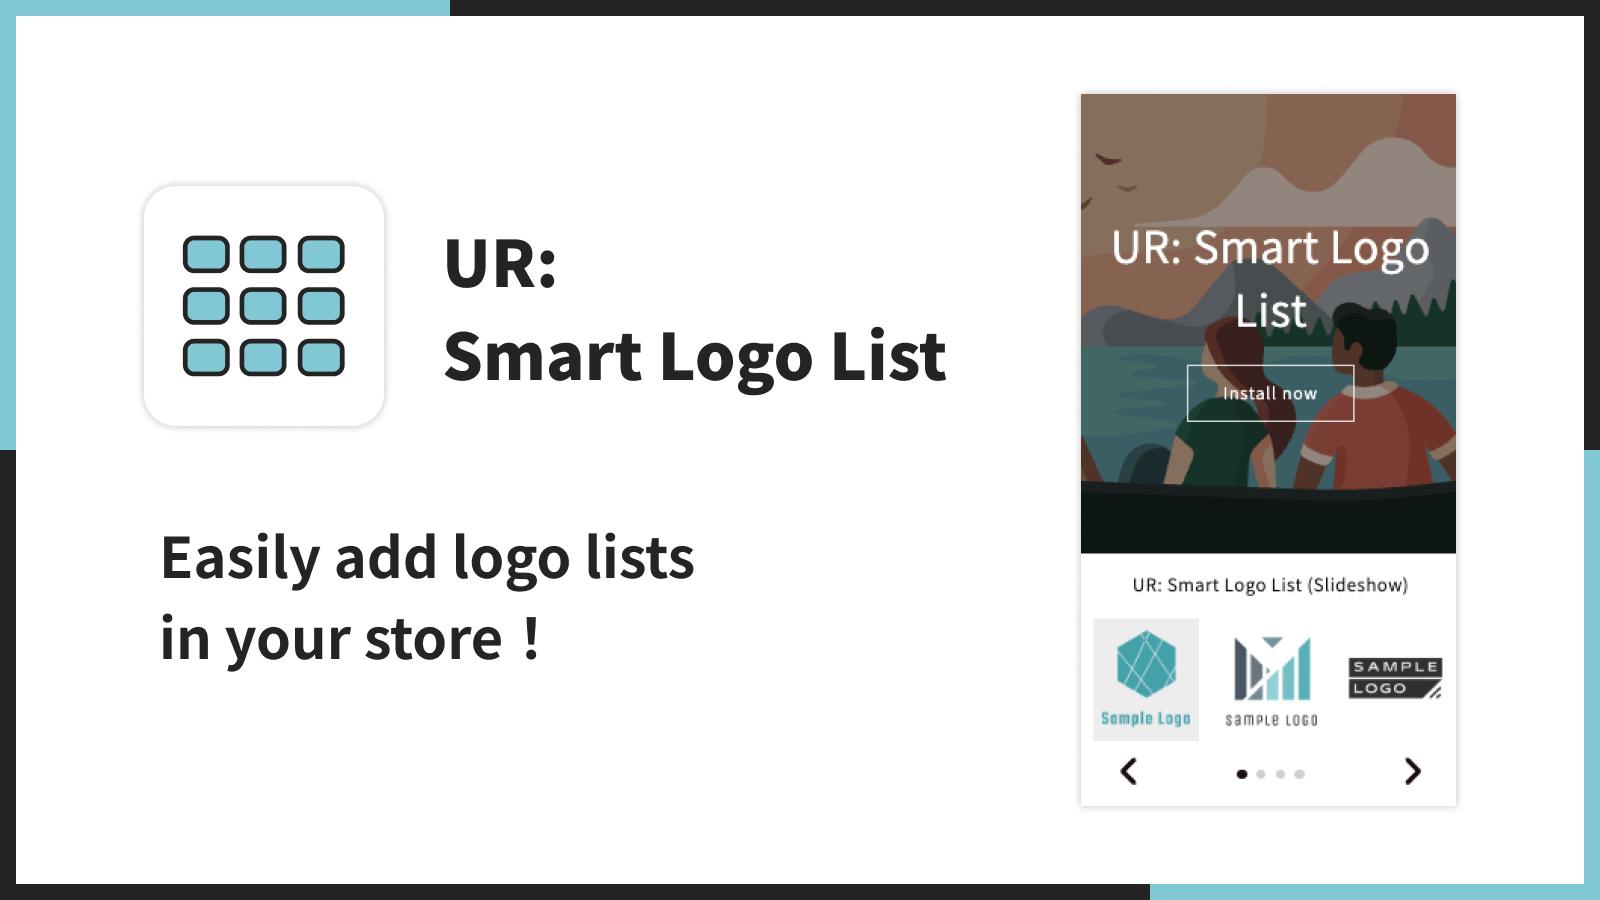 UR: Smart Logo List | ¡Añade fácilmente listas de logotipos en tu tienda！